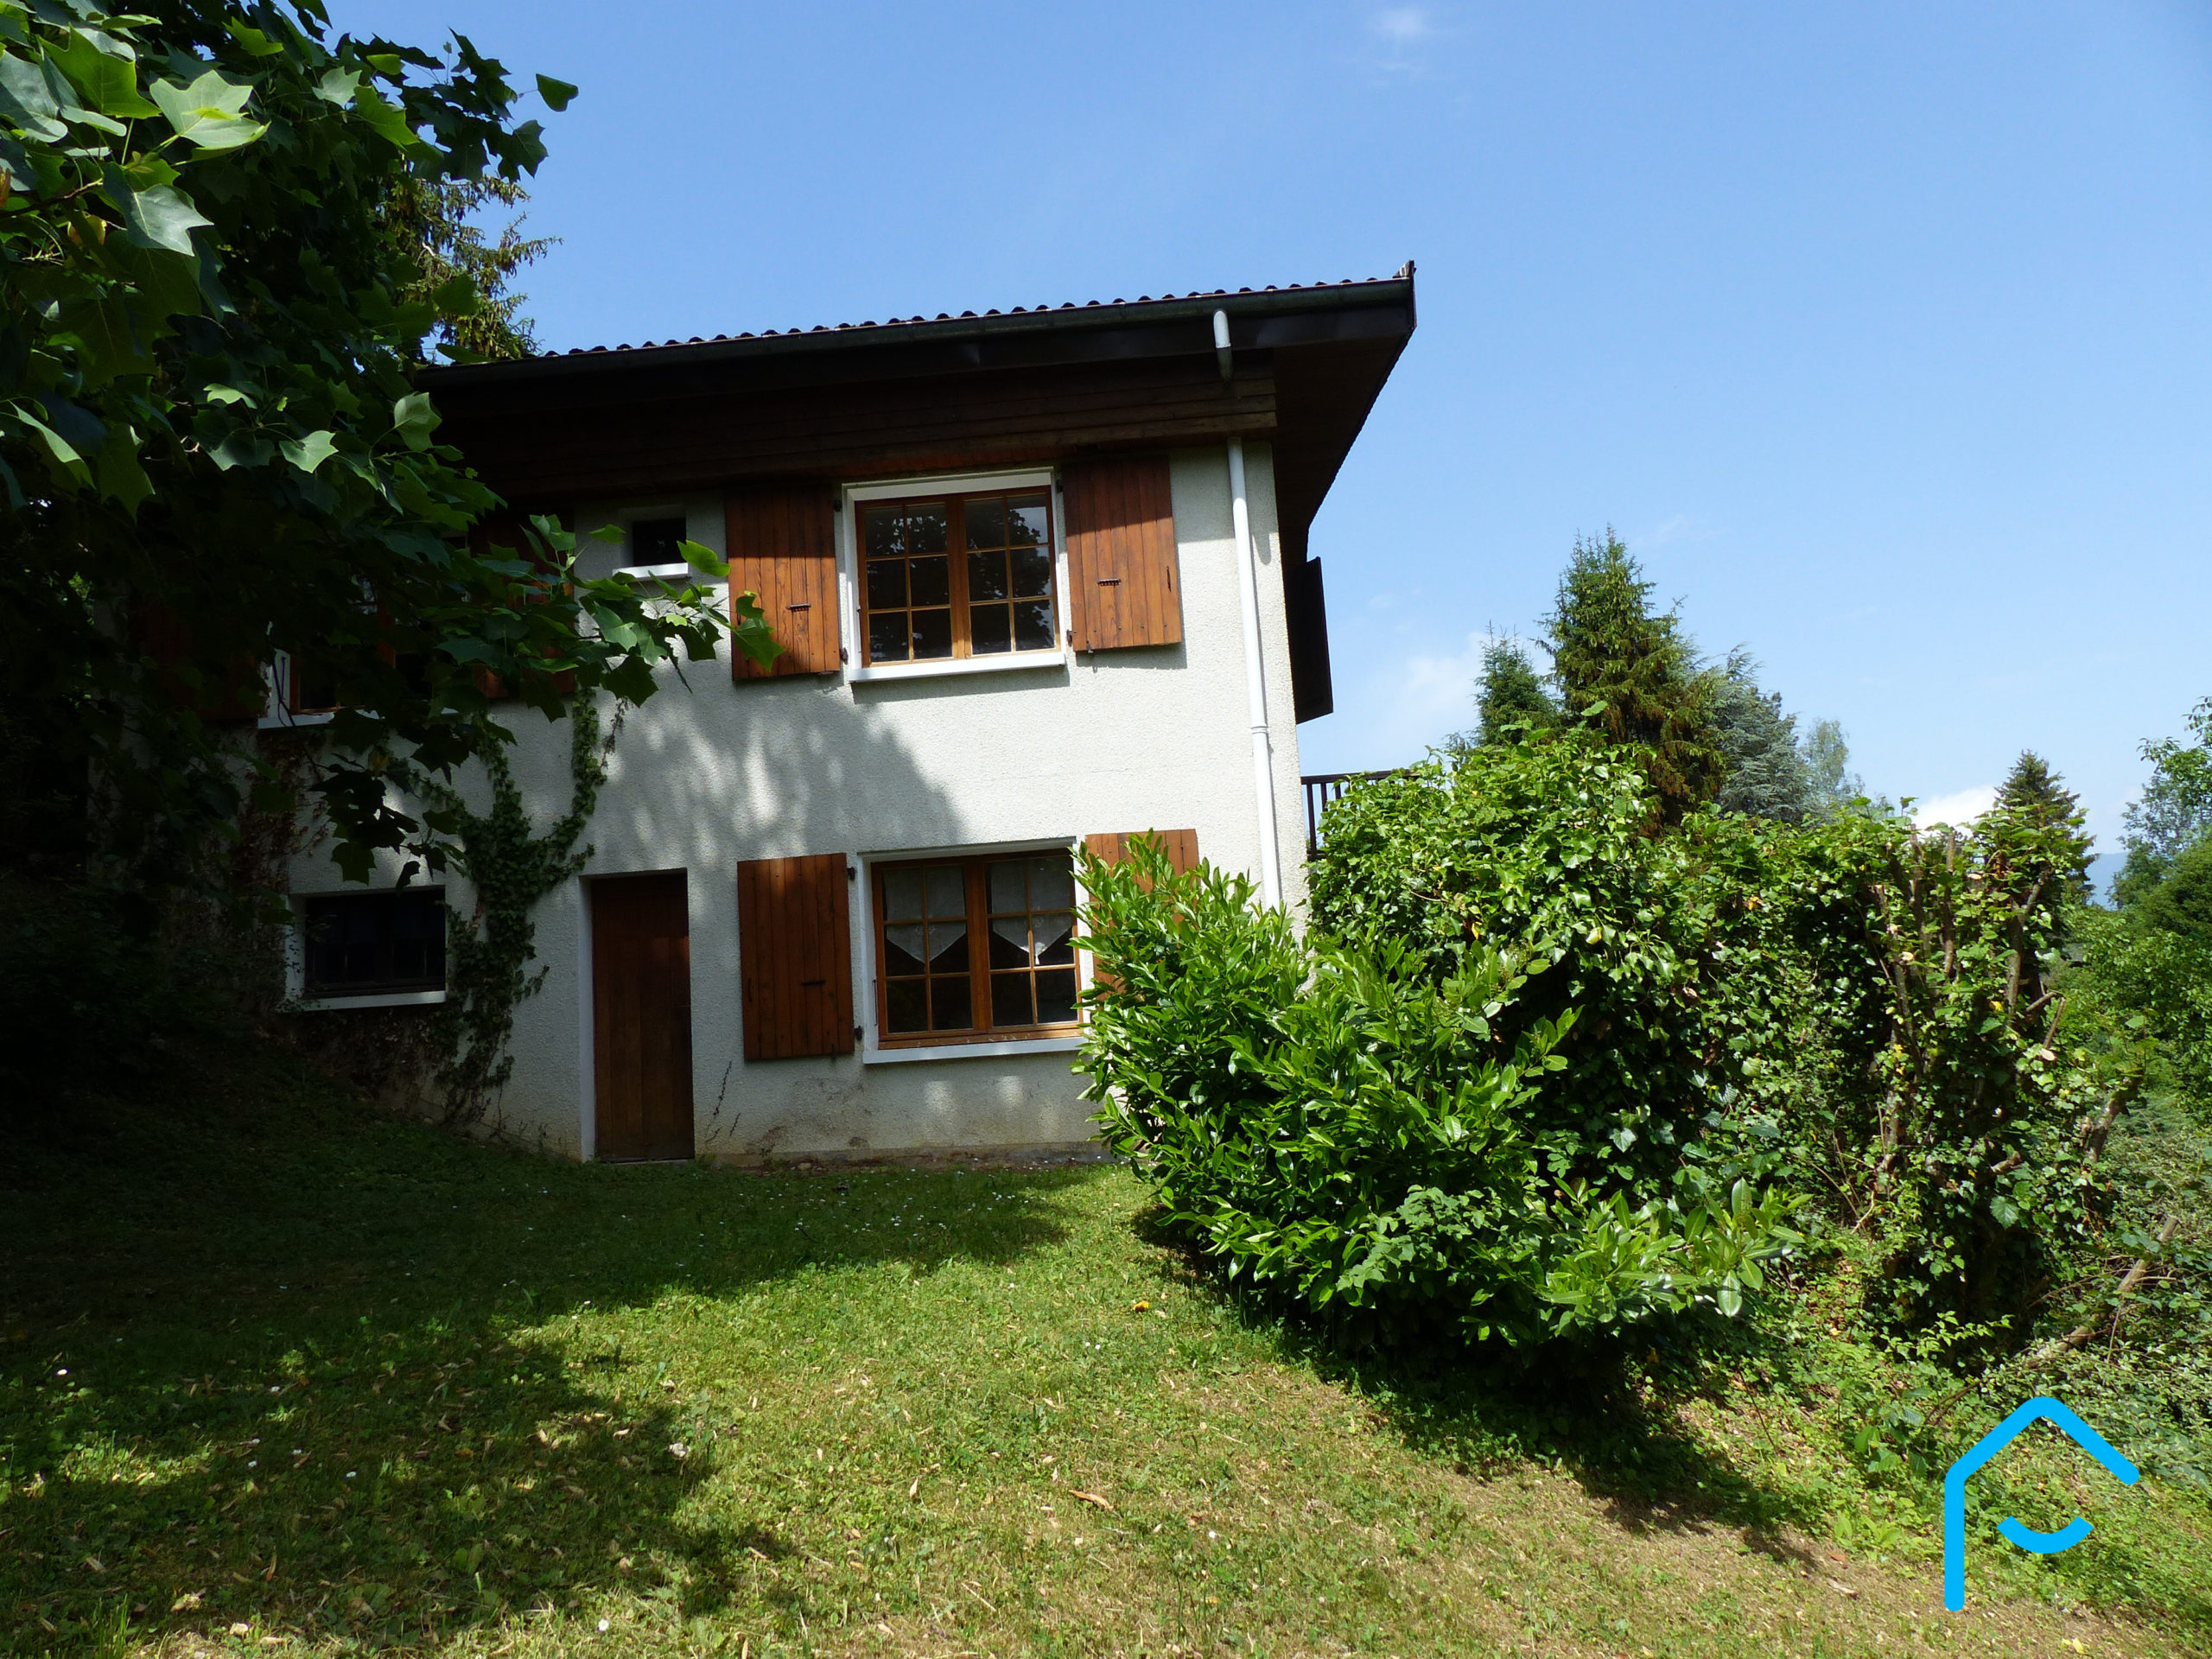 A vendre Savoie Chambéry Jacob-Bellecombette maison individuelle terraini 5 chambres quartier résidentiel rare à la vente vue 25